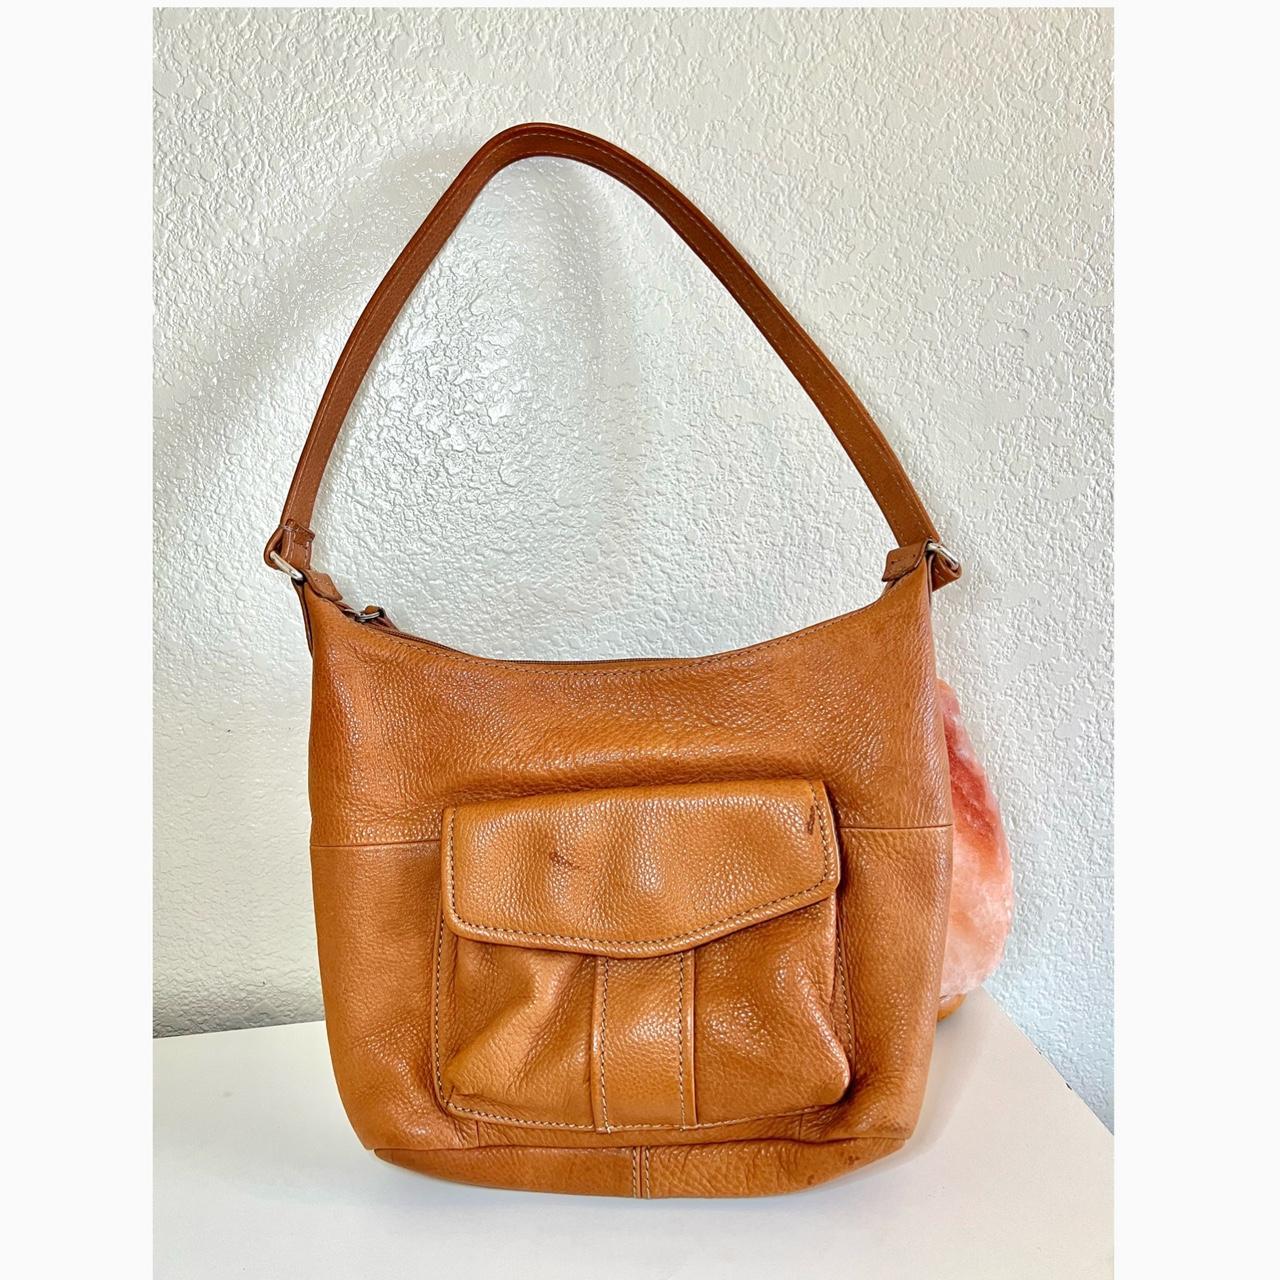 Fossil Brown Leather Shoulder Bag